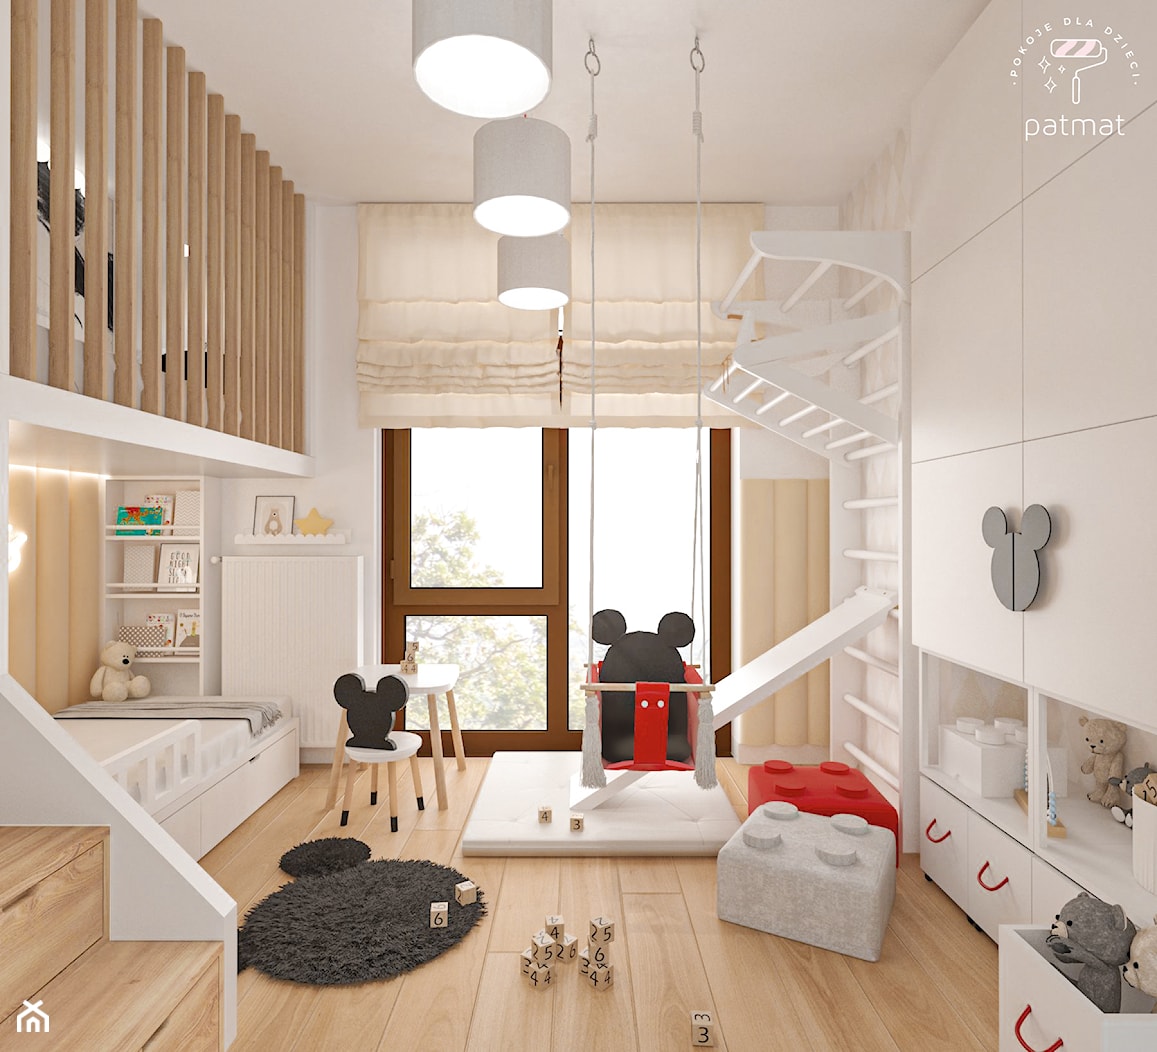 Pokój dla chłopca w stylu Mickey - zdjęcie od patmat.pl - pokoje dla dzieci @patmatstudio - Homebook